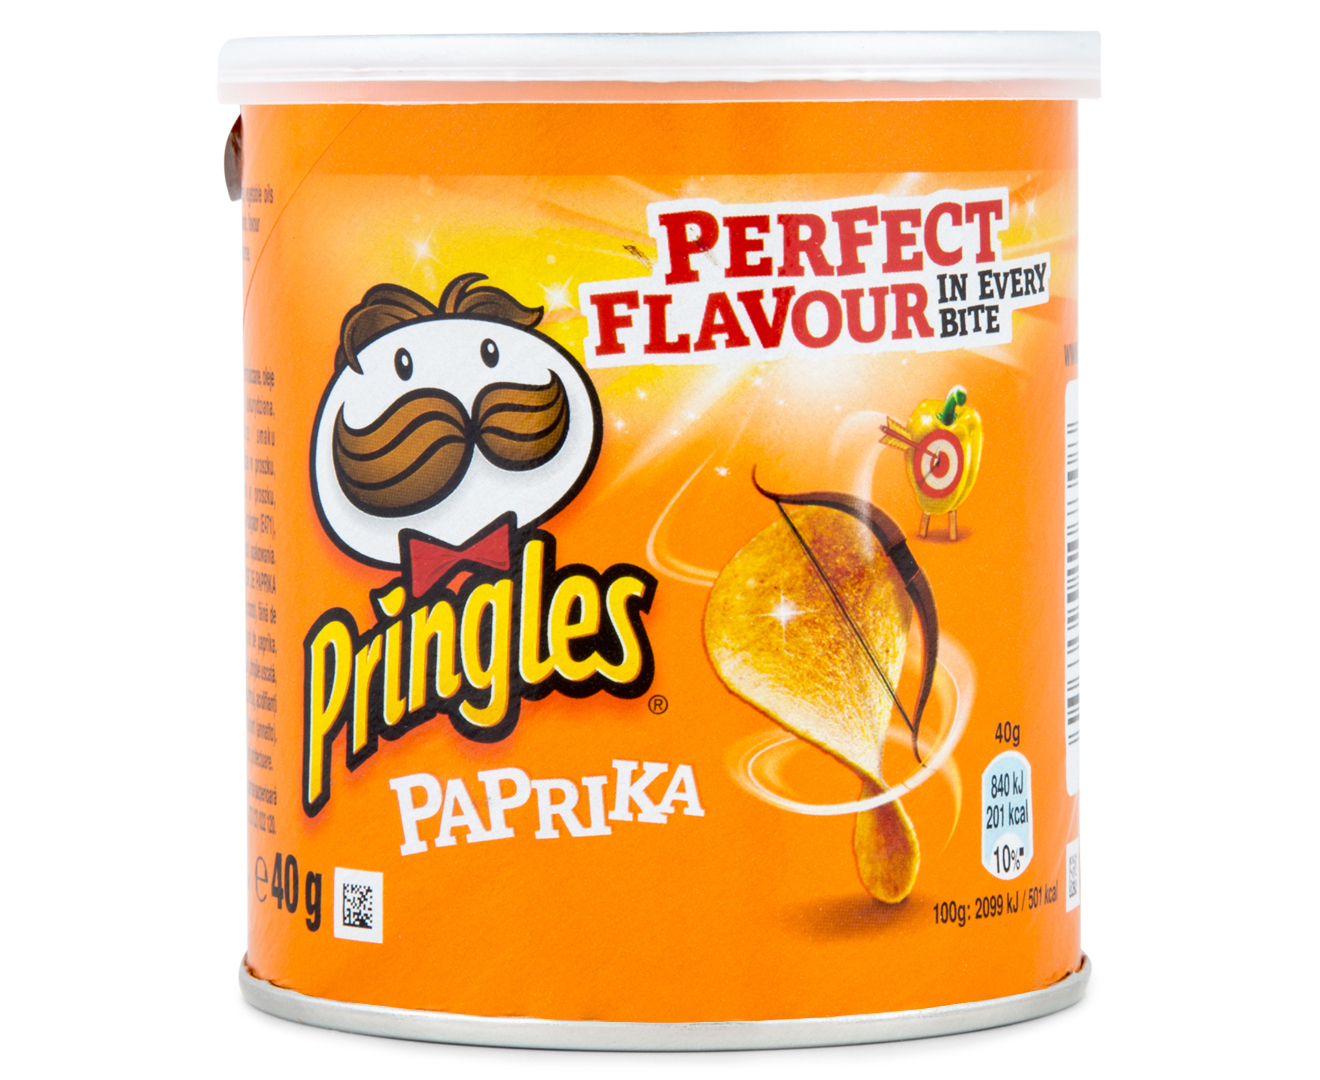 12 x Pringles  Paprika Minis  40g eBay